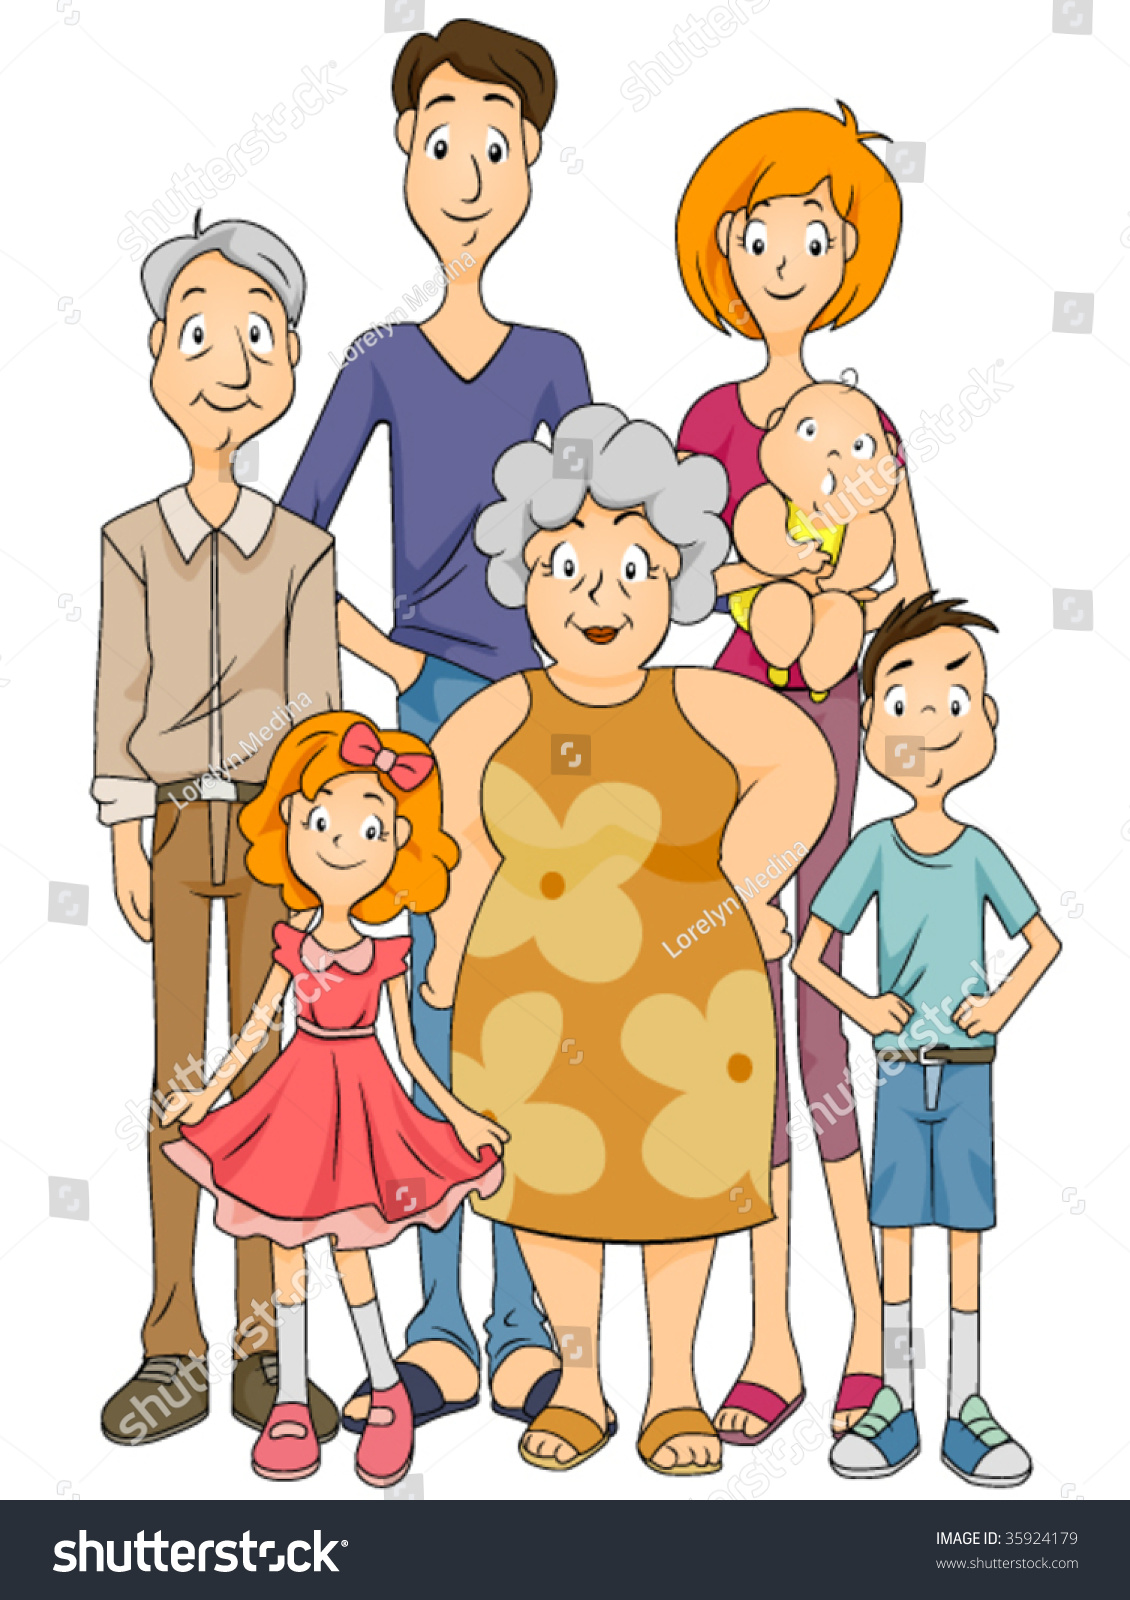 Extended Family - Vector - 35924179 : Shutterstock